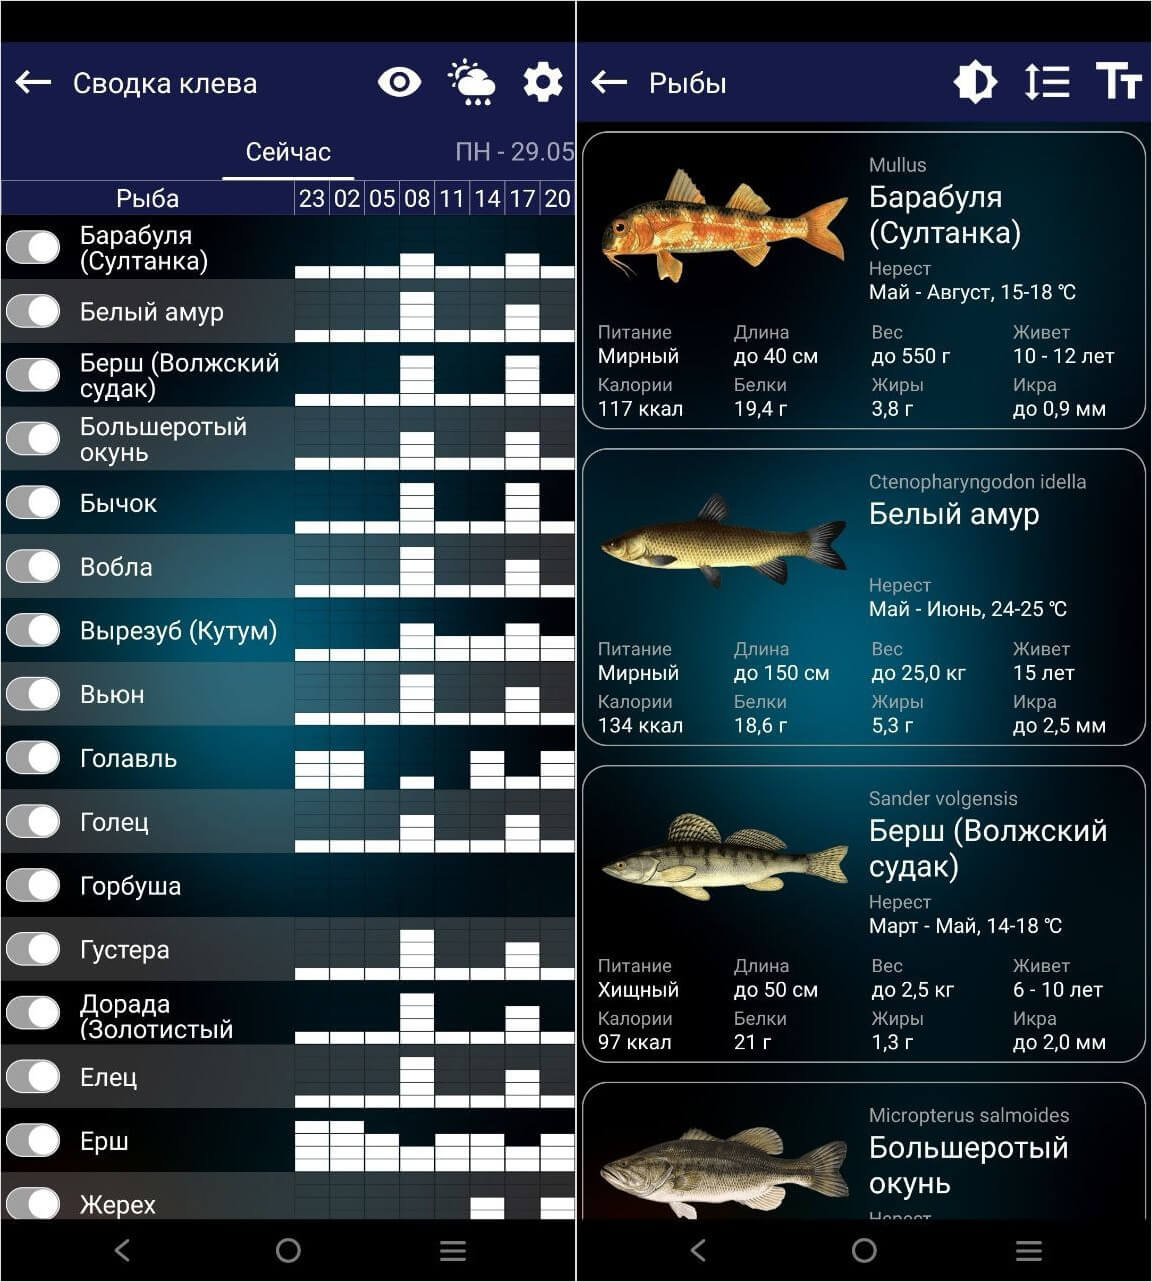 Прогноз клёва — приложение для рыбаков. Прогноз клёва должен скачать каждый уважающий себя рыбак. Фото.